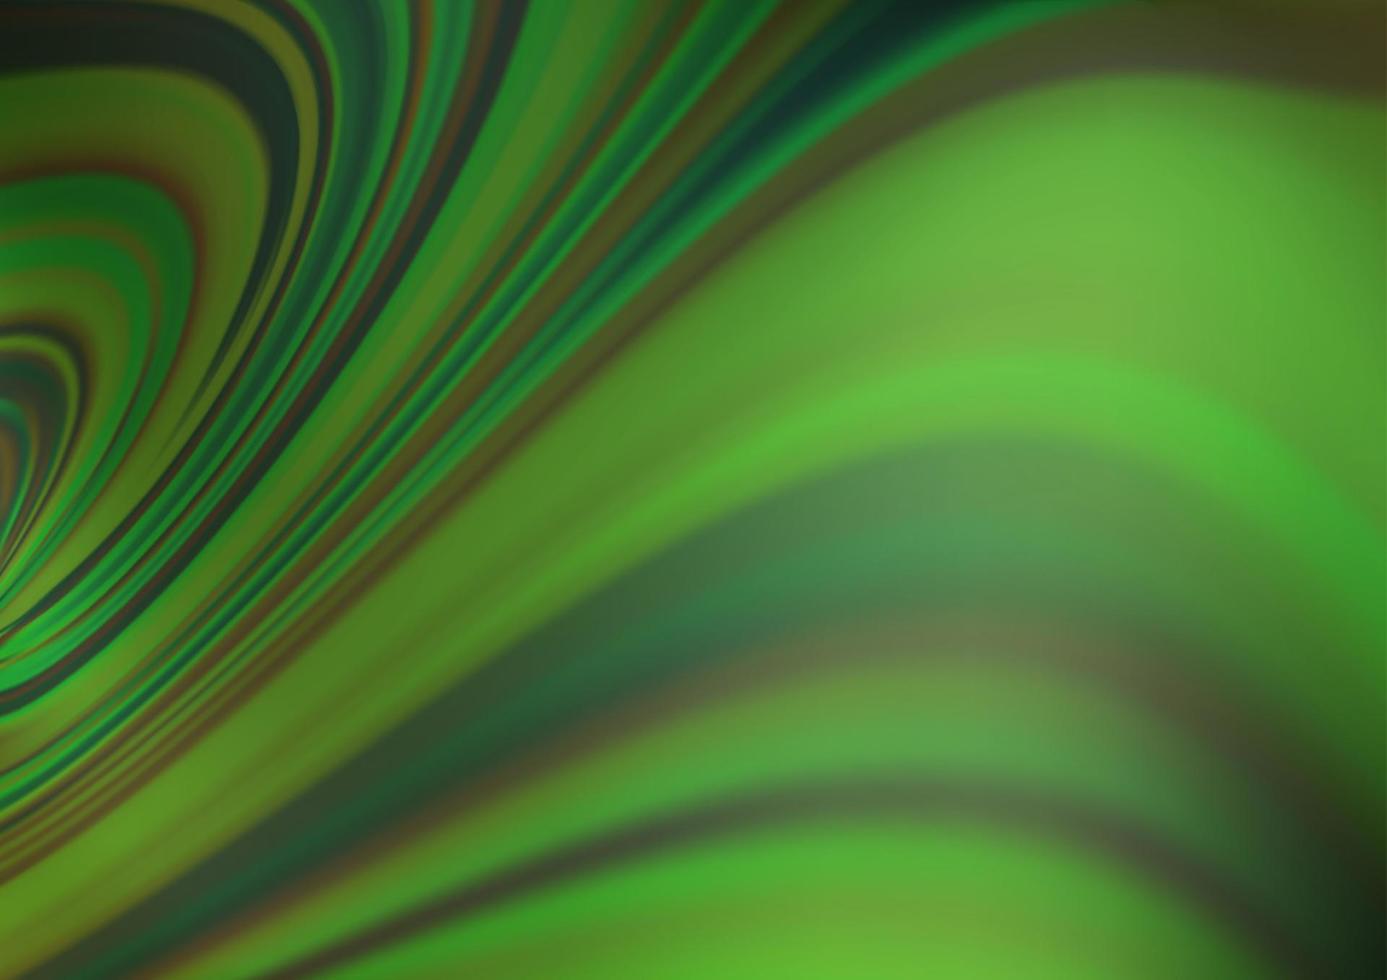 hellgrüne Vektor glänzend abstrakte Vorlage.